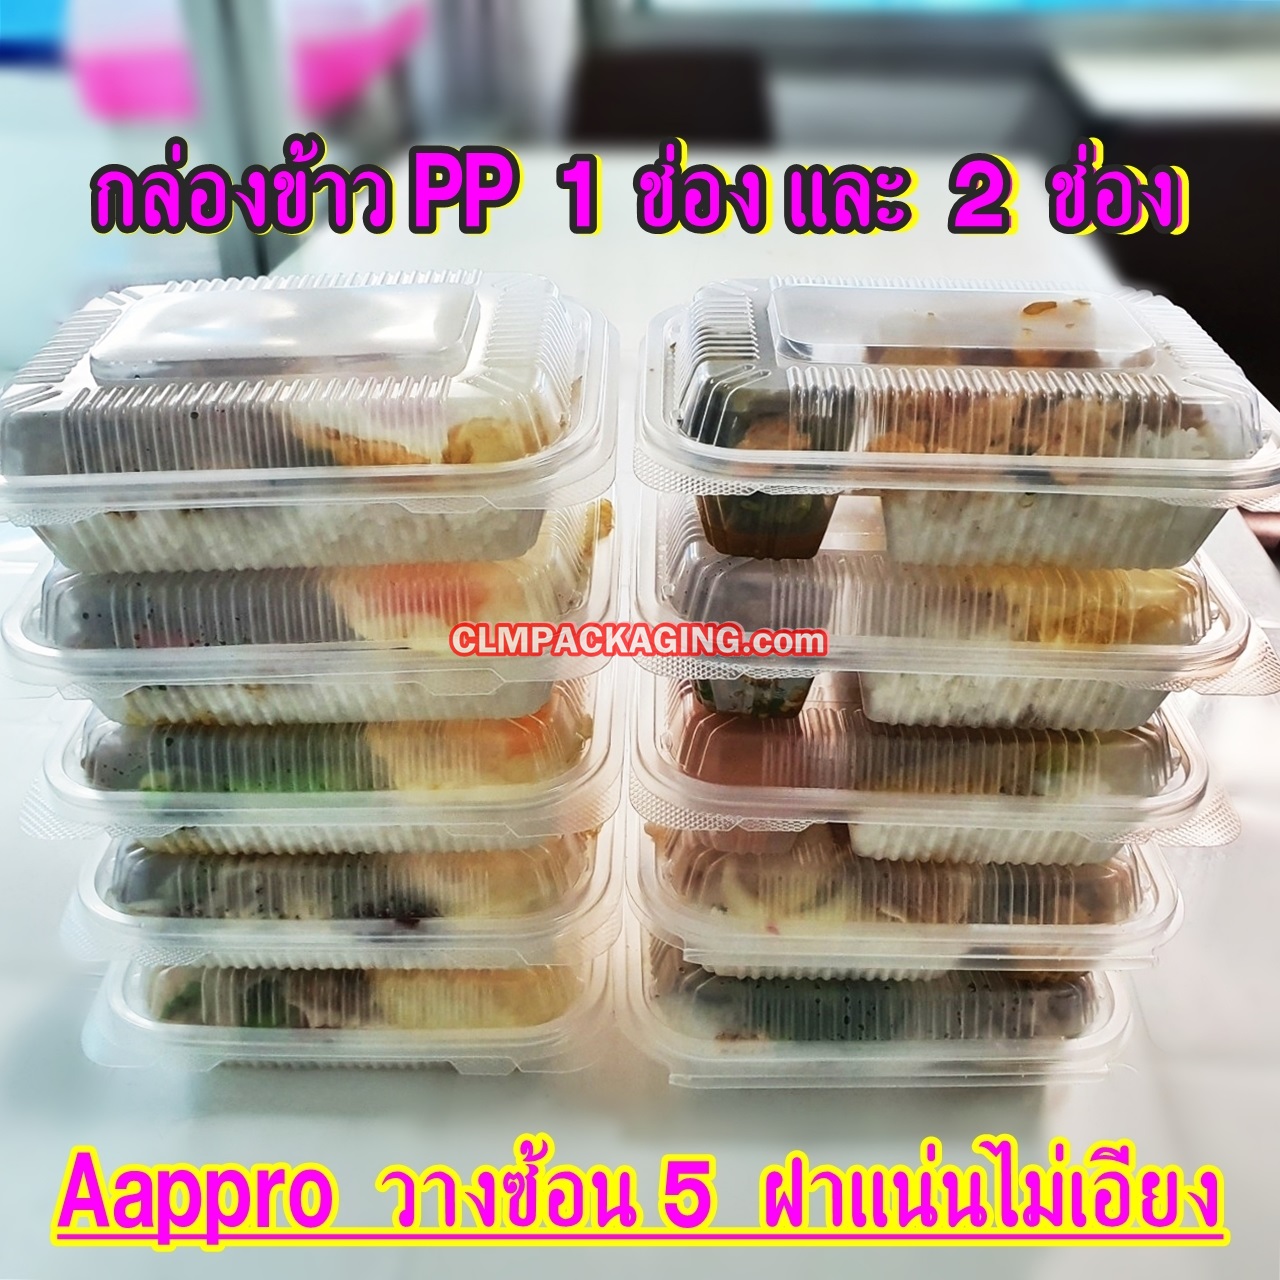 กล่องอาหารฝาพับ 1และ2 ช่อง PP Aappro